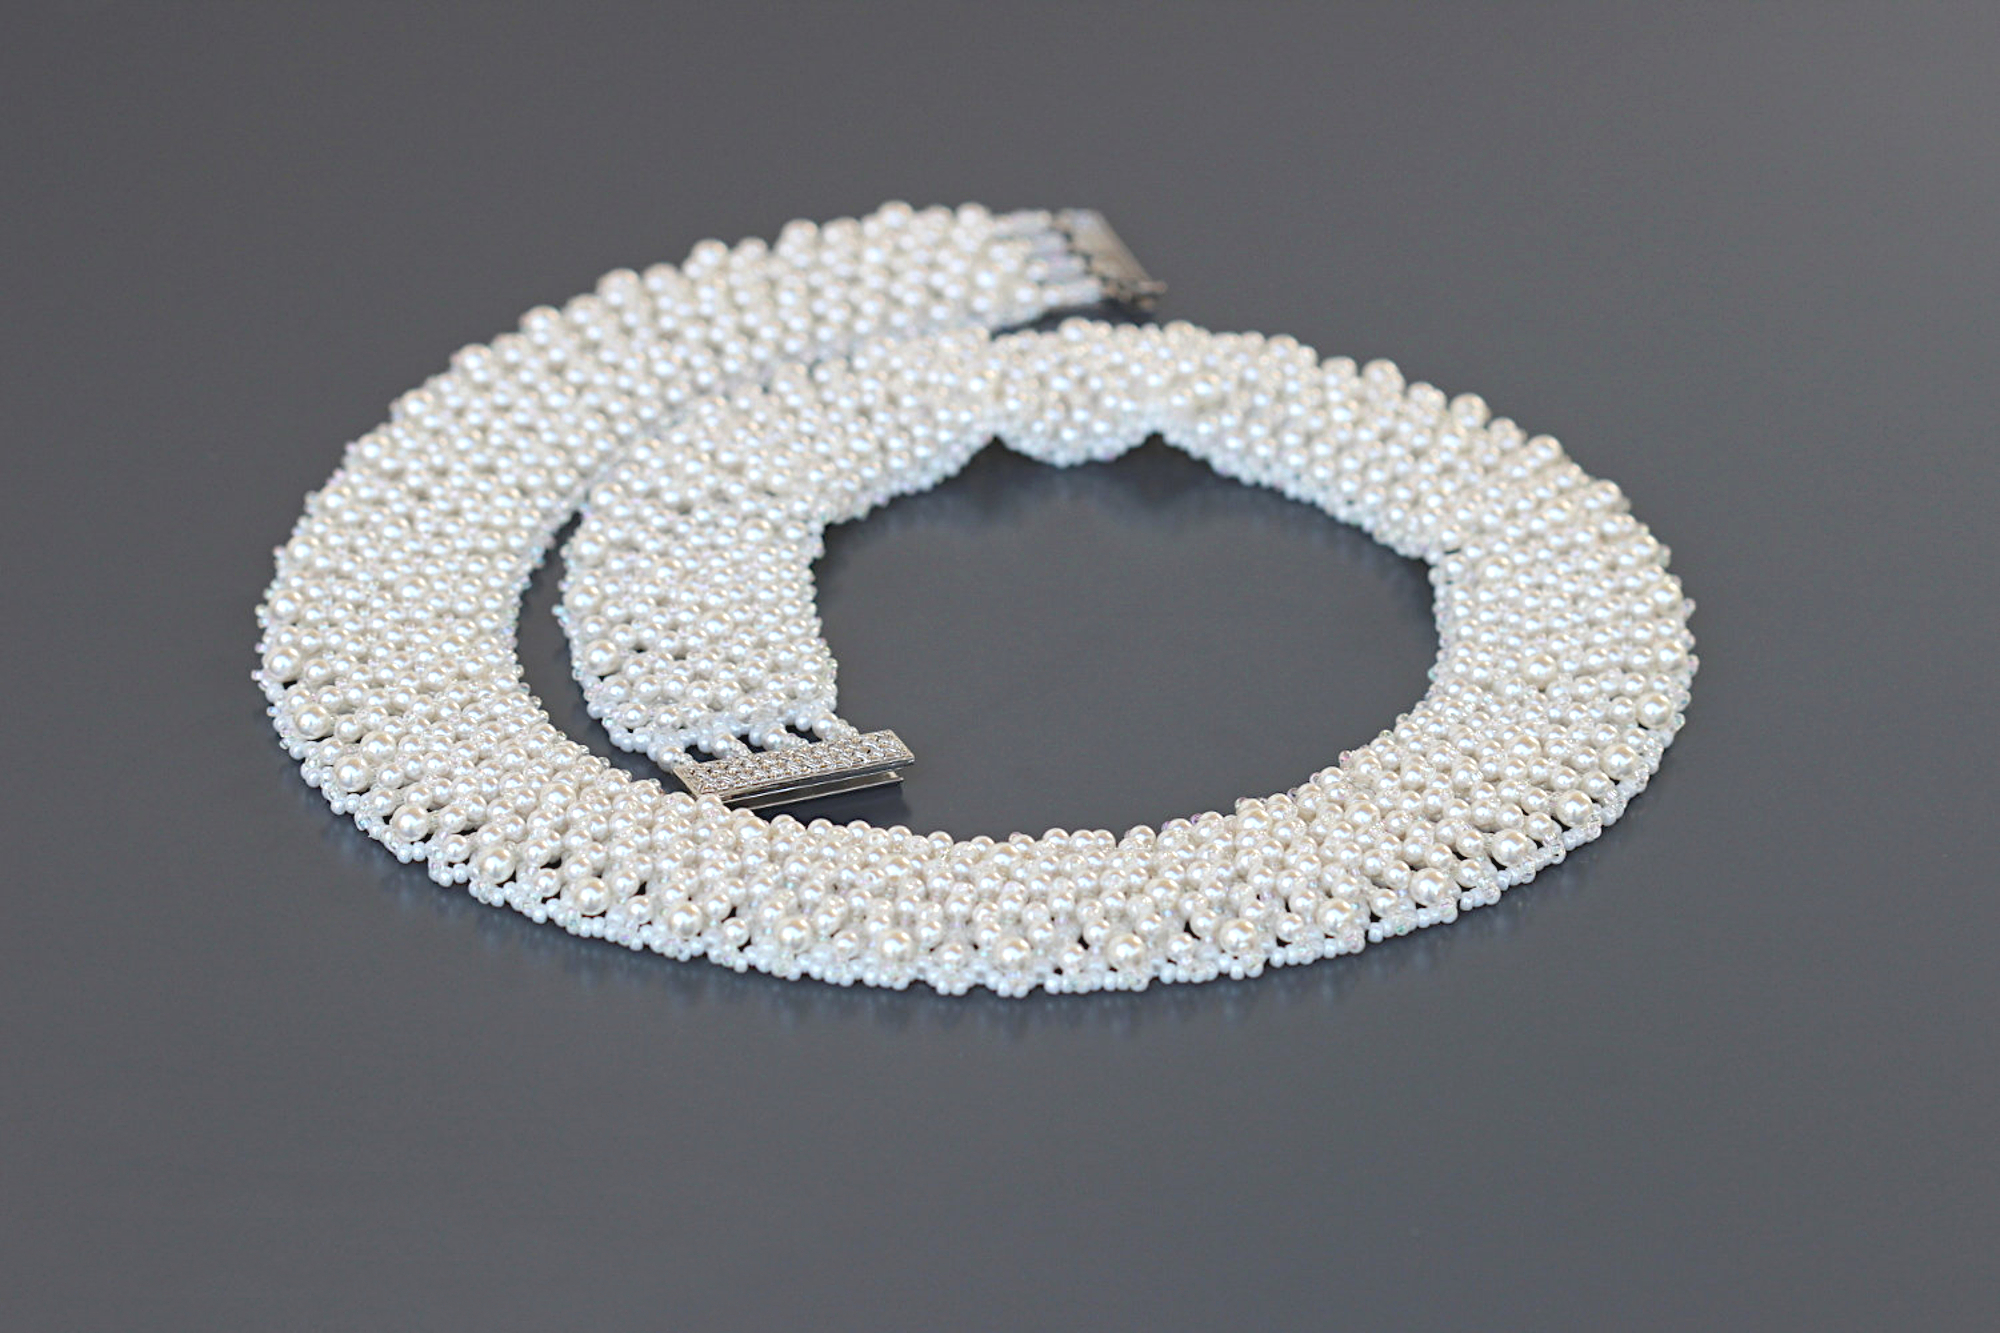 Collier plastron blanc nacré tissé à laiguille avec des rocailles Miyuki et des perles rondes nacrées blanches